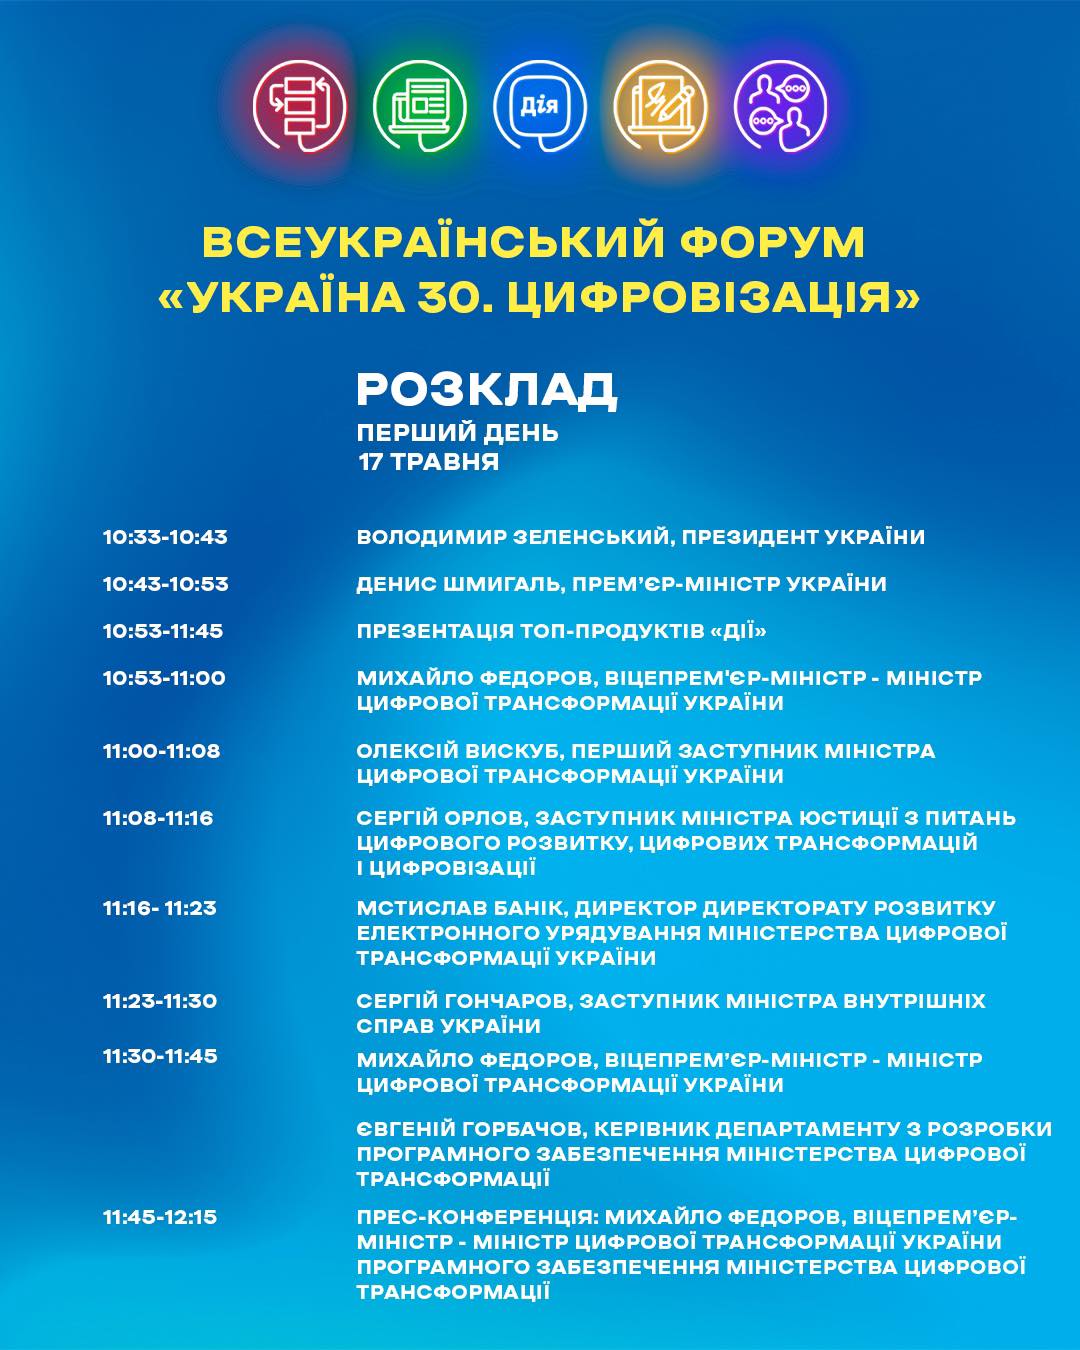 Володимир Зеленський 17 травня відвідає Всеукраїнський форум «Україна 30. Цифровізація»